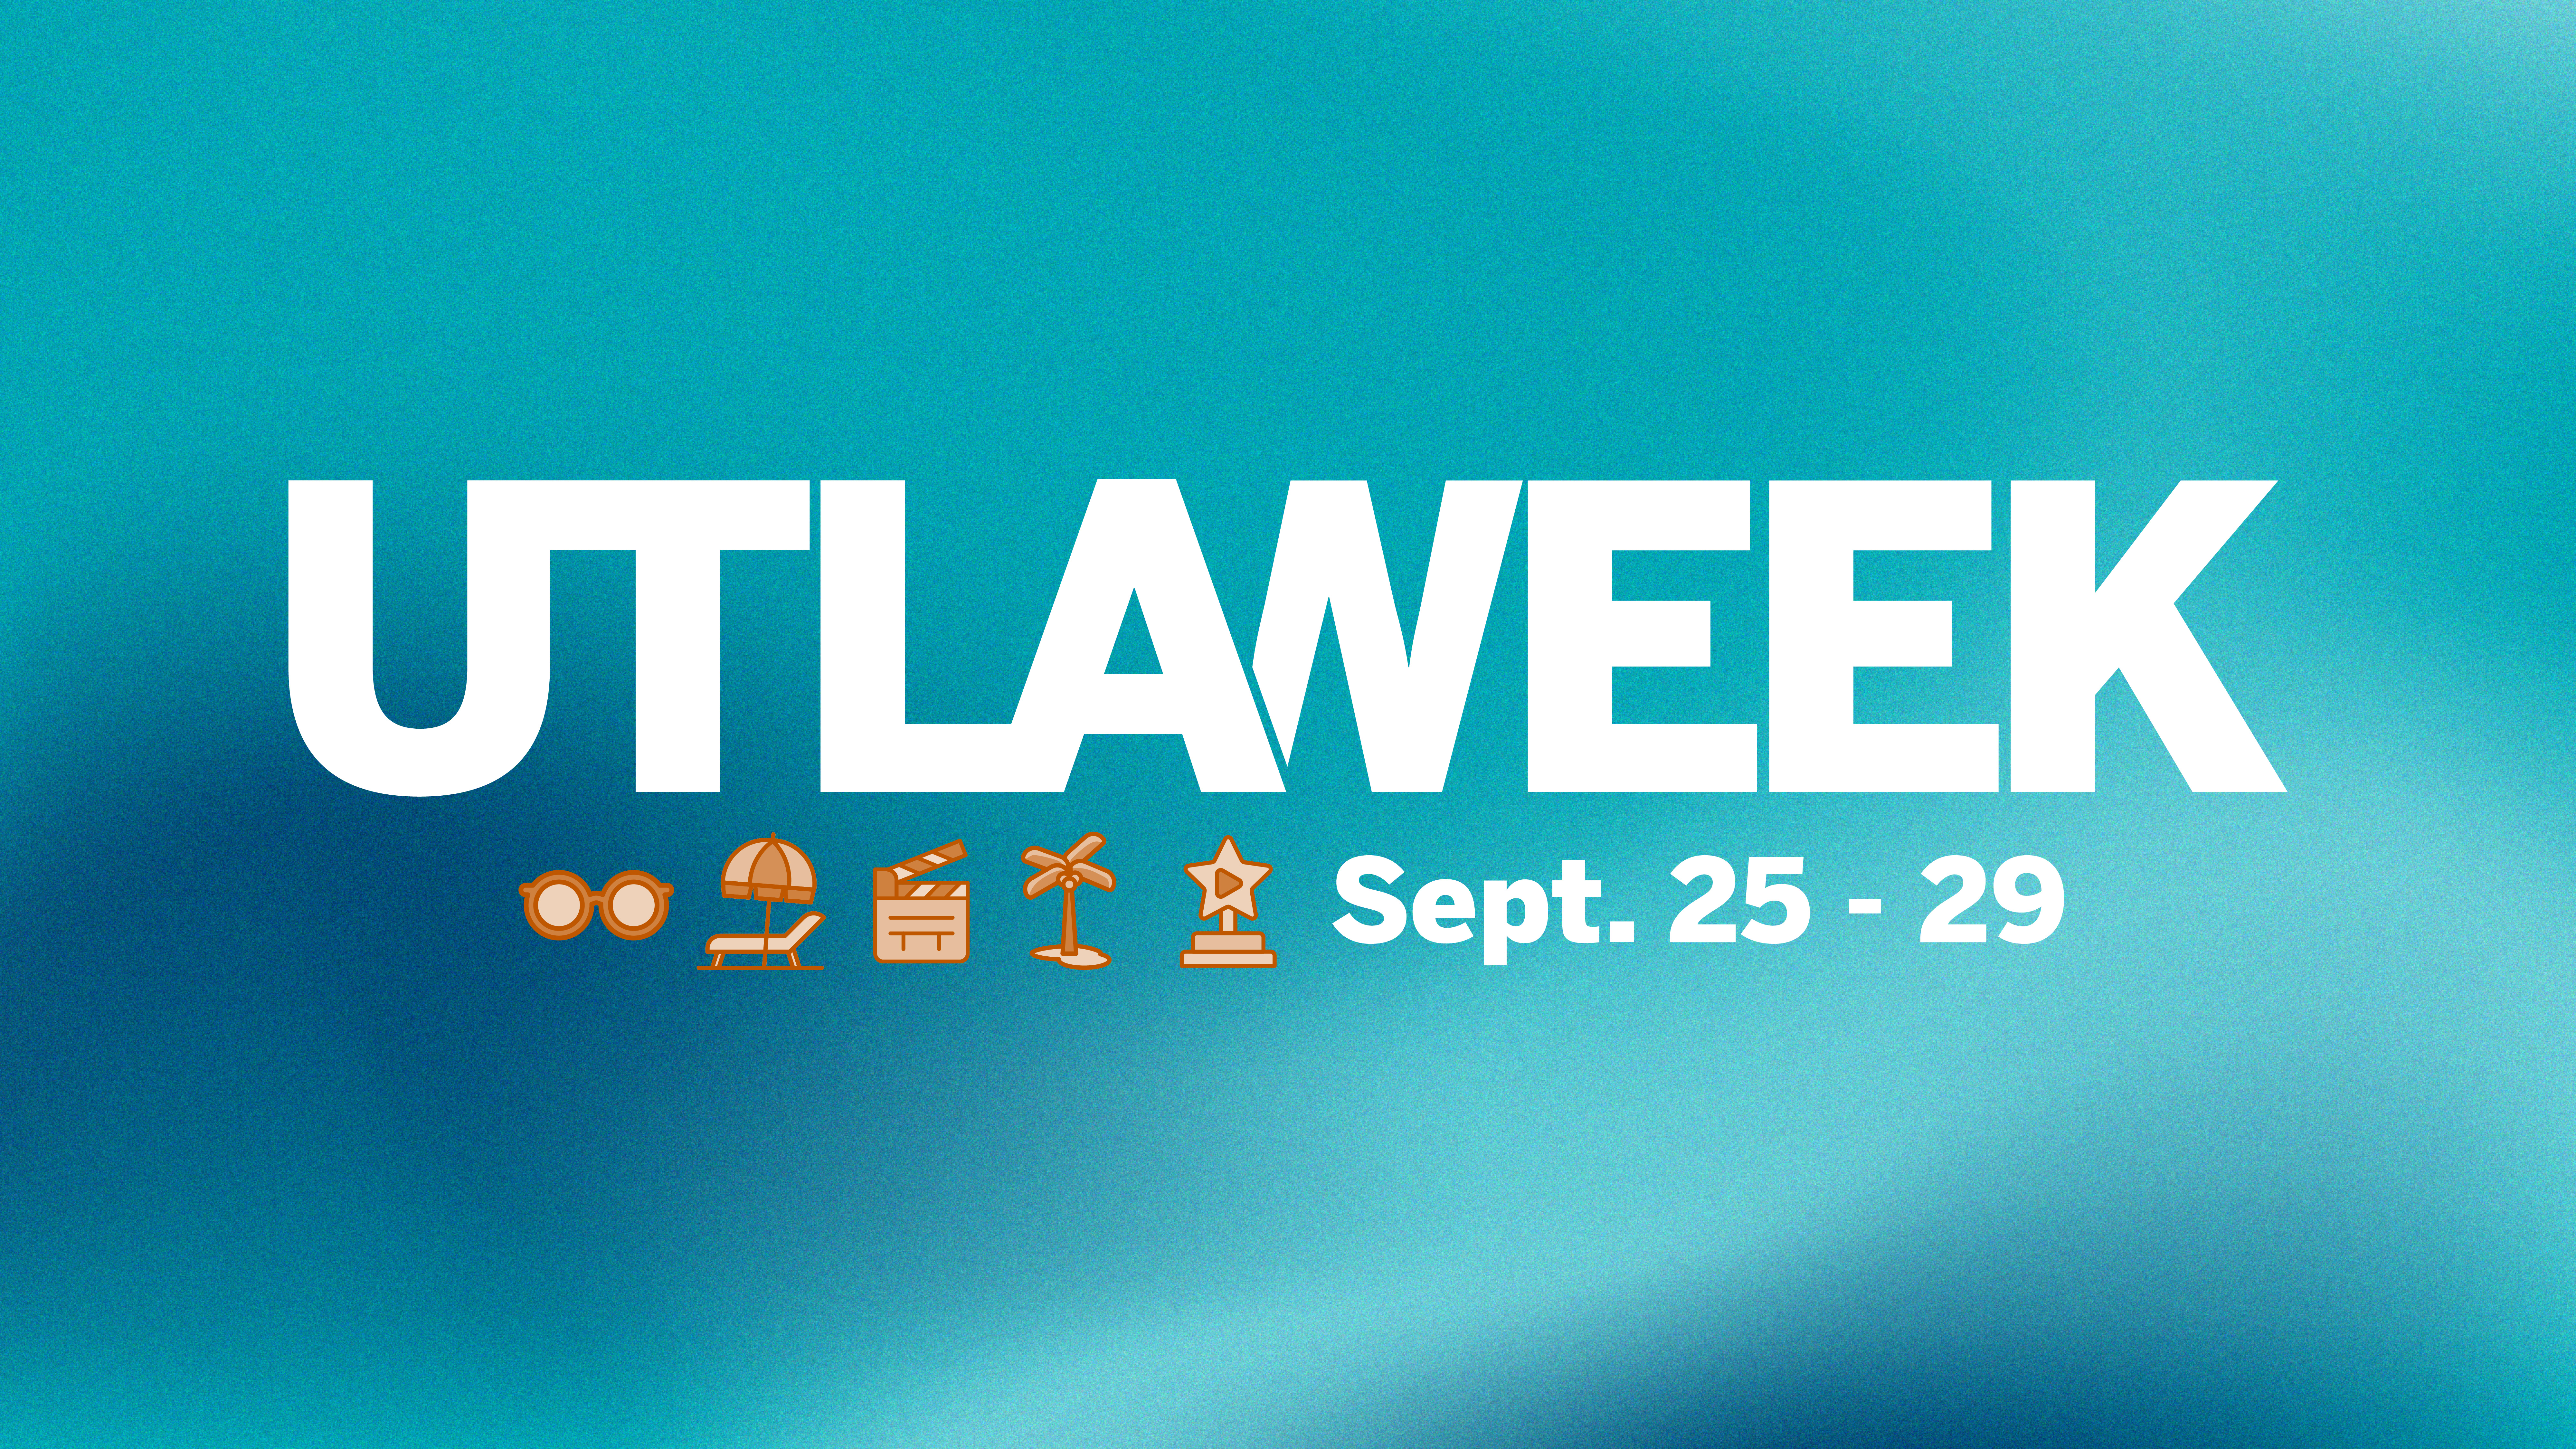 UTLA Week Sept. 25-29